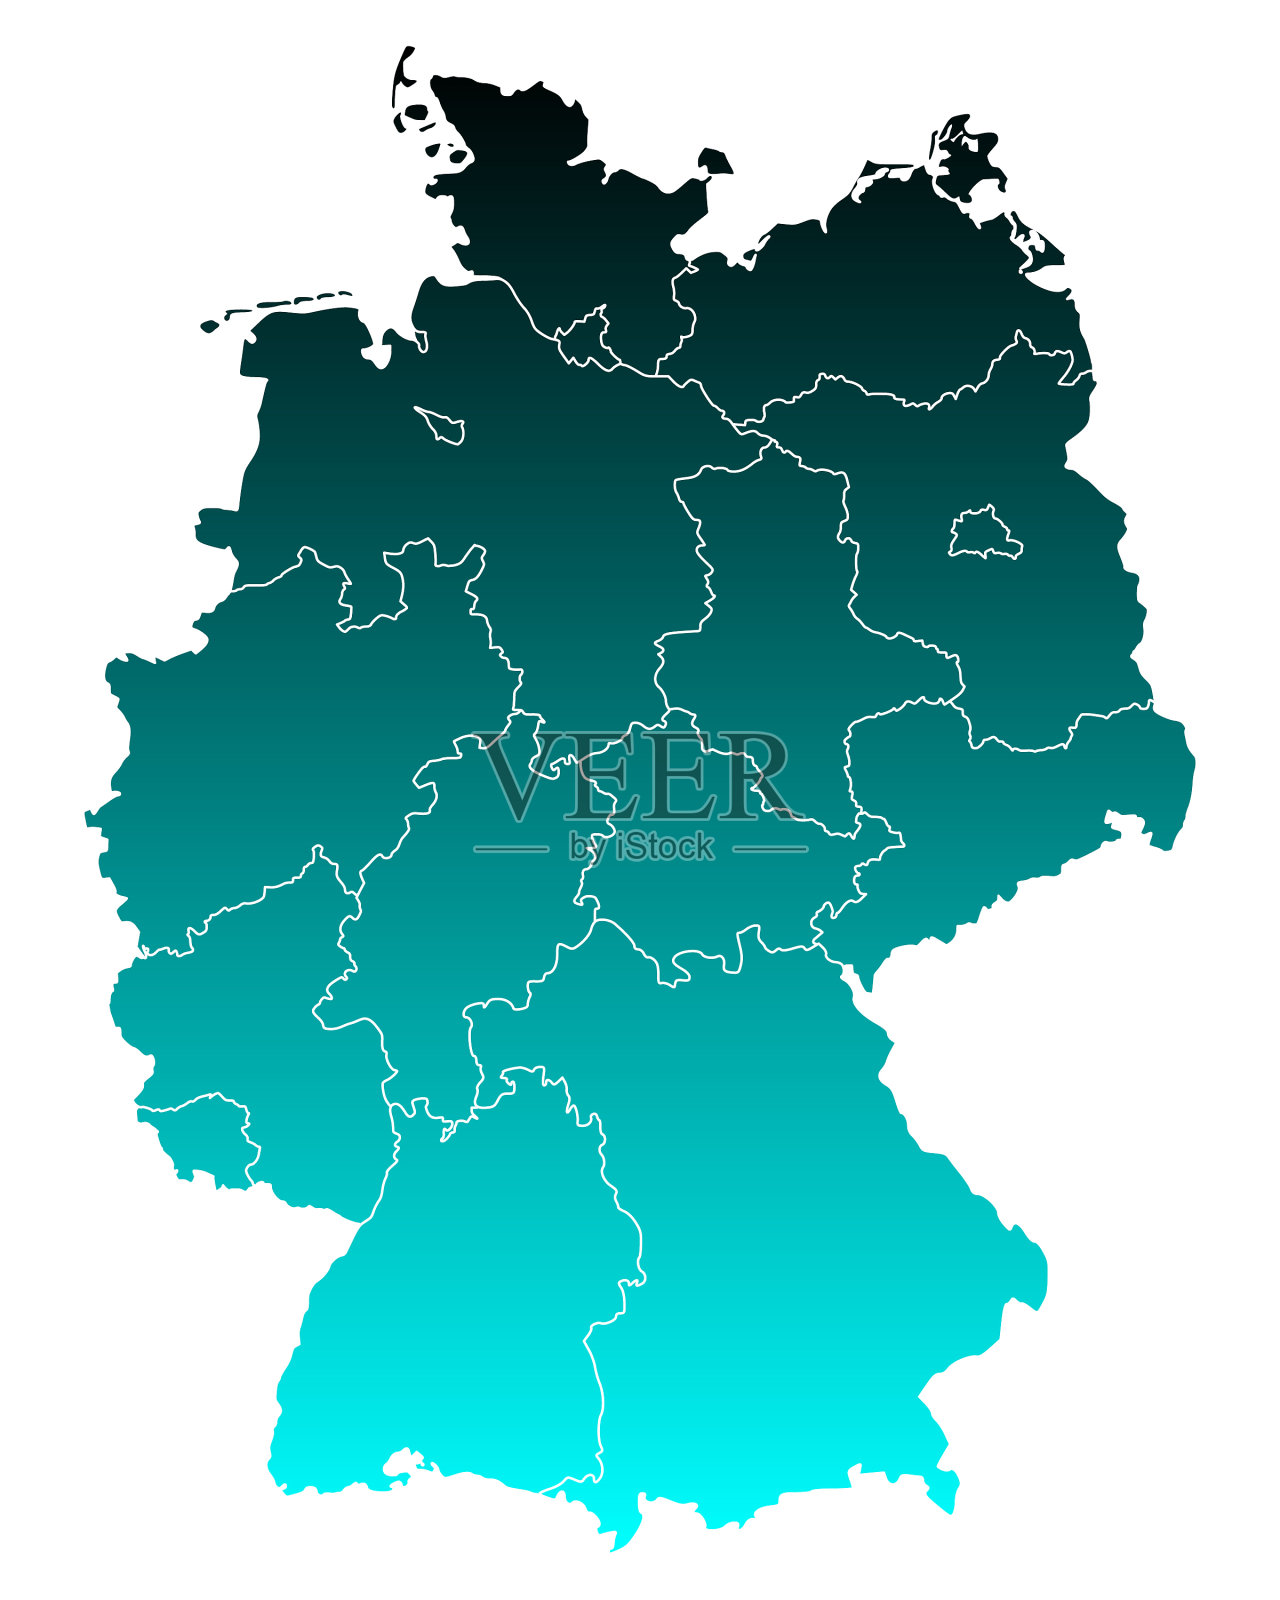 德国地图|德国地图全图高清版大图片|旅途风景图片网|www.visacits.com